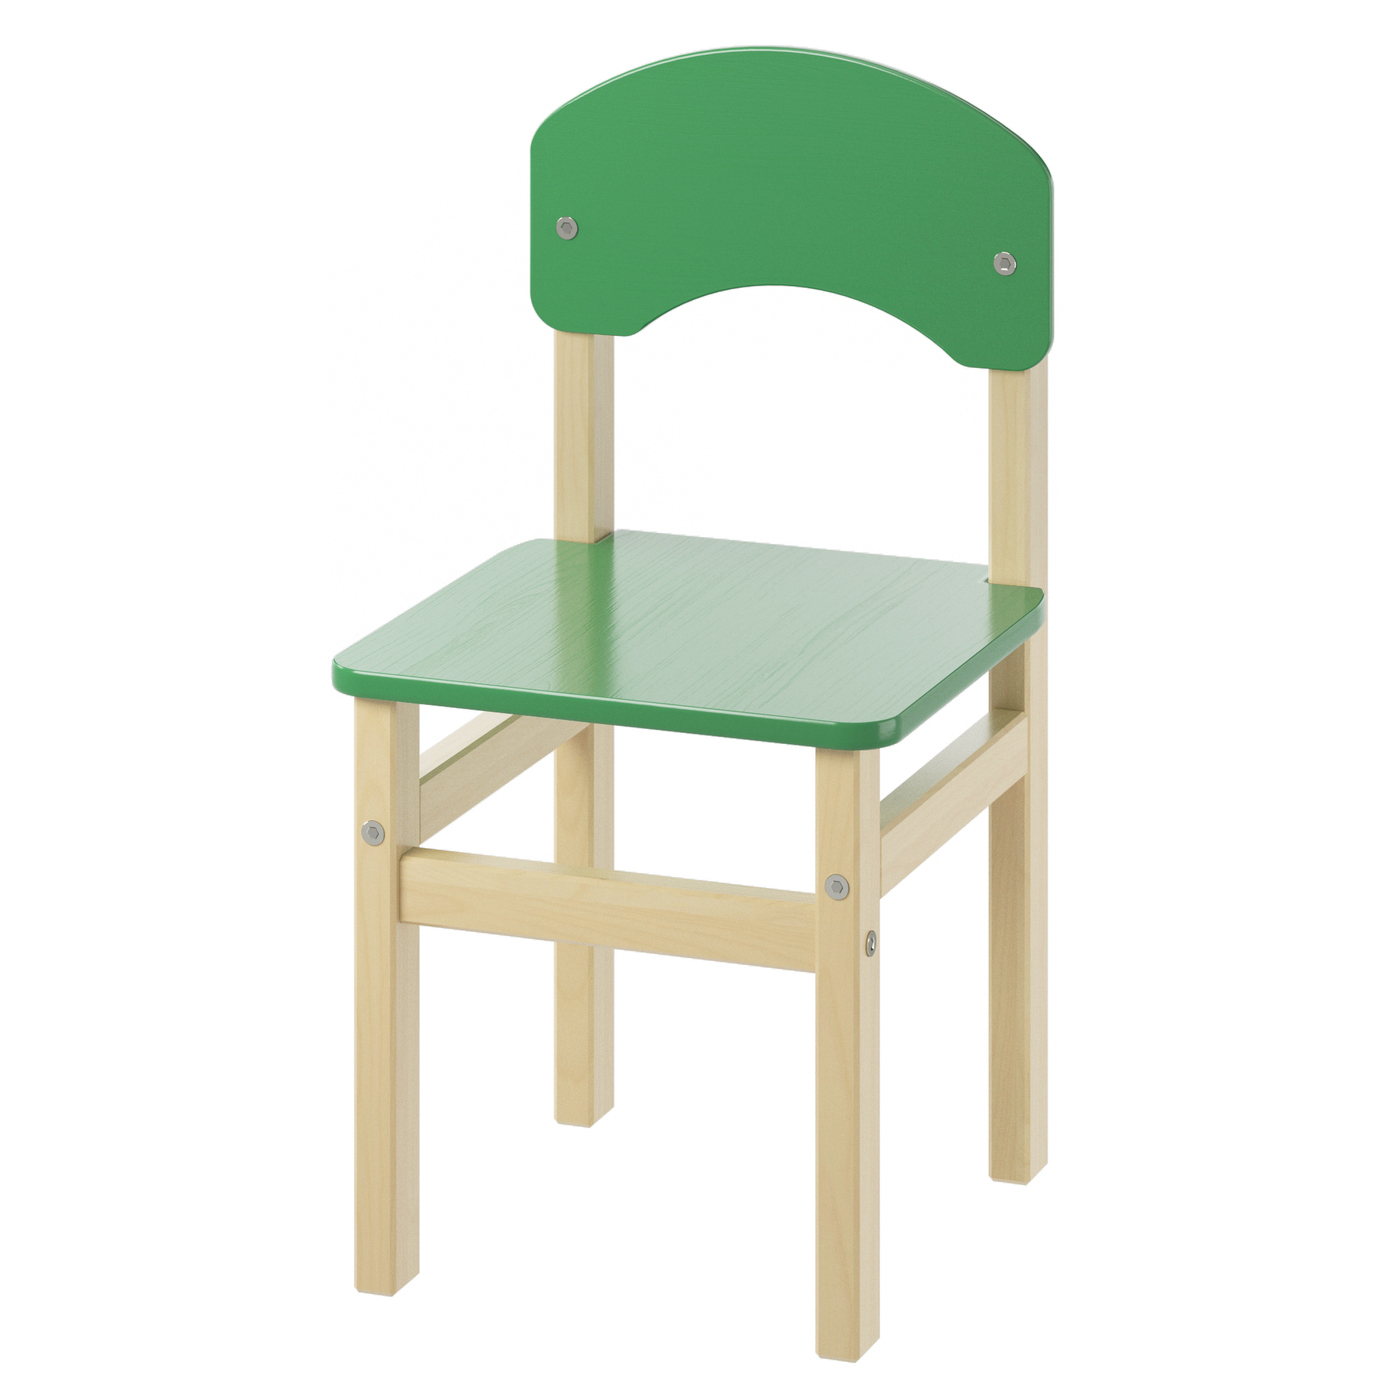 М-561 стул регулируемый детский массив сосны гр.1-2-3